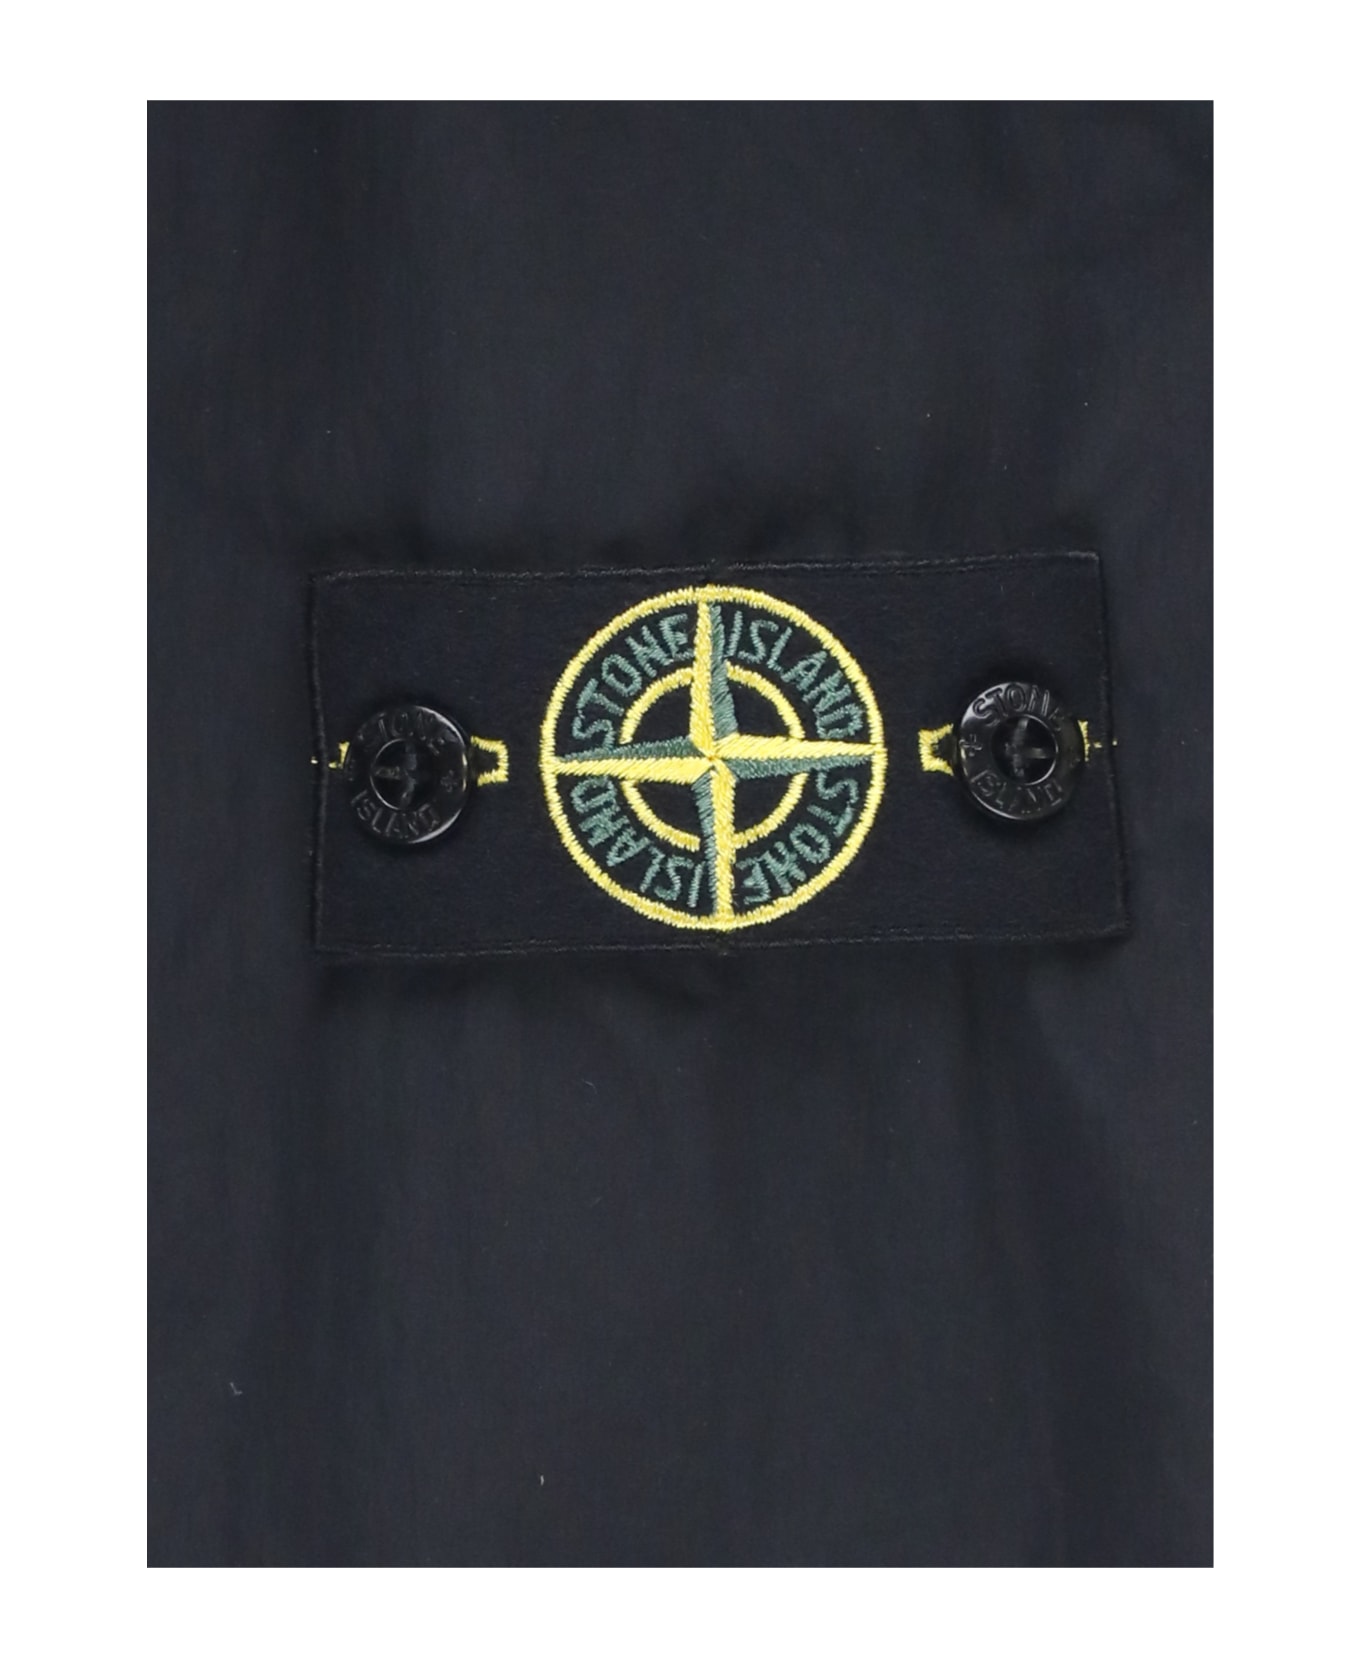 Stone Island Jacket With Logo - Black